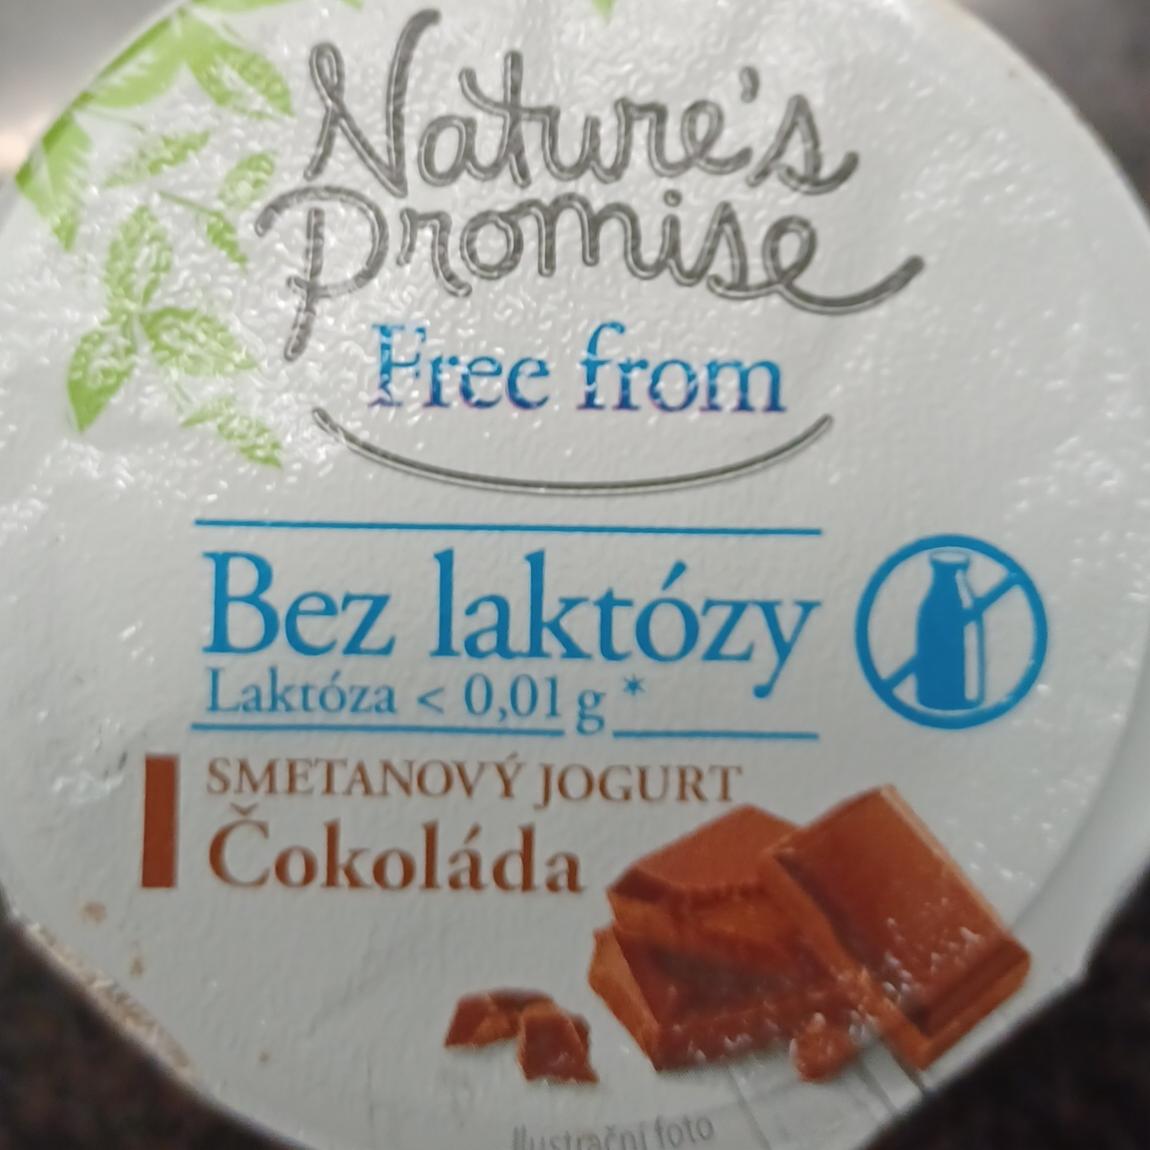 Fotografie - Free from bez laktózy Smetanový jogurt čokoláda Nature's Promise